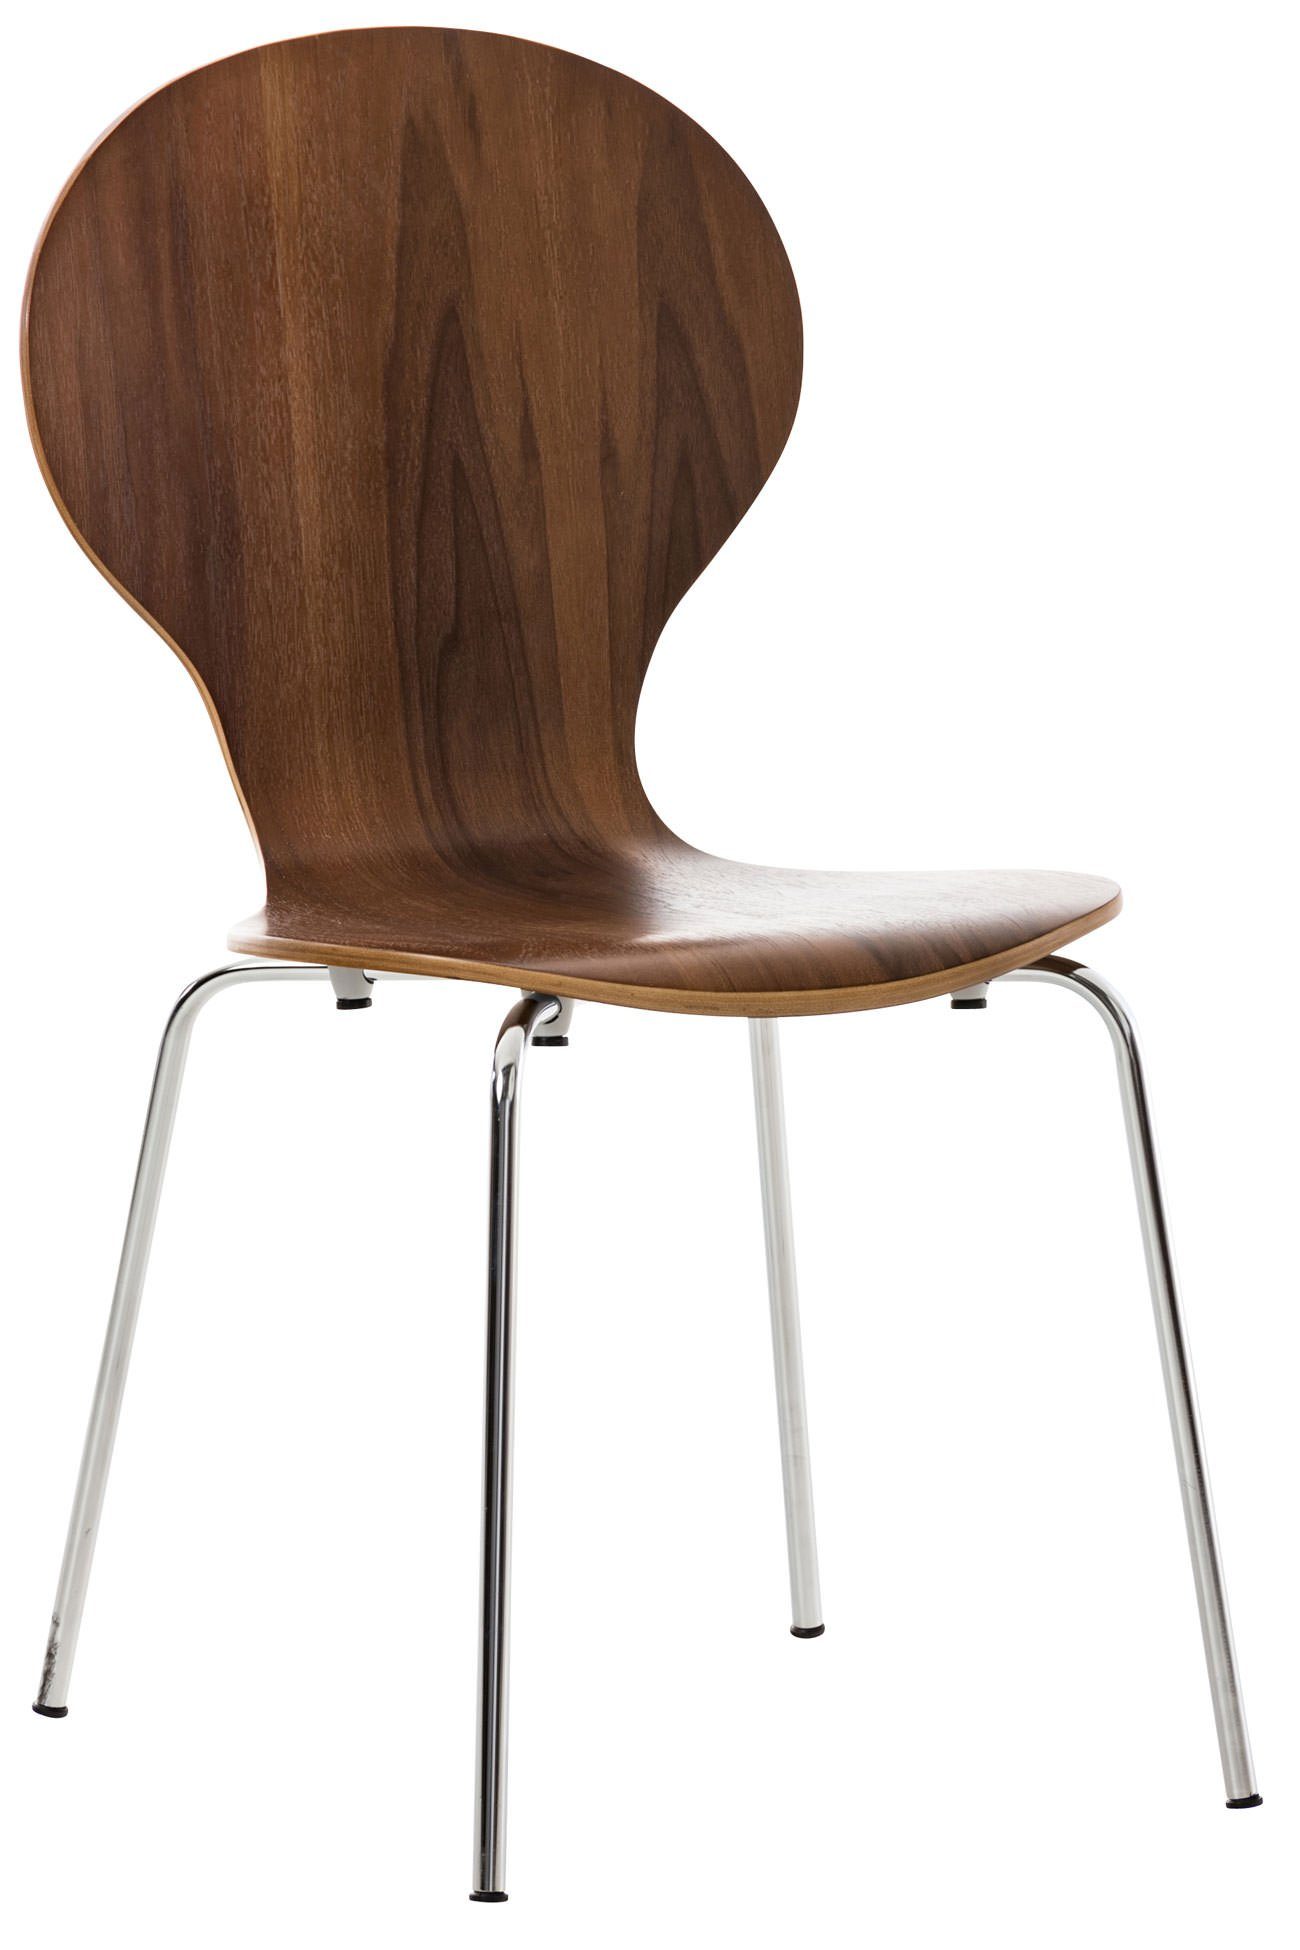 TPFLiving Besucherstuhl Daggy mit ergonomisch geformter Sitzfläche - Konferenzstuhl (Besprechungsstuhl - Warteraumstuhl - Messestuhl), Gestell: Metall chrom - Sitzfläche: Holz Walnuss